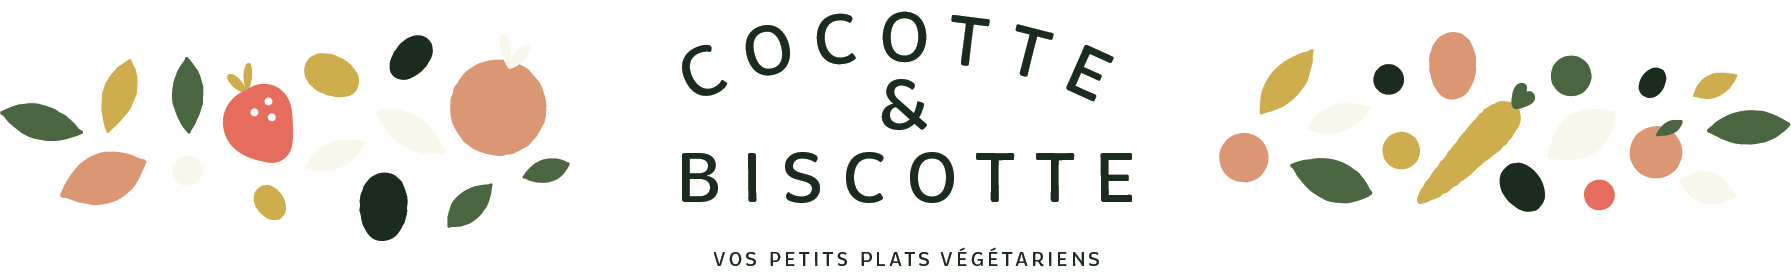 Cocotte et Biscotte